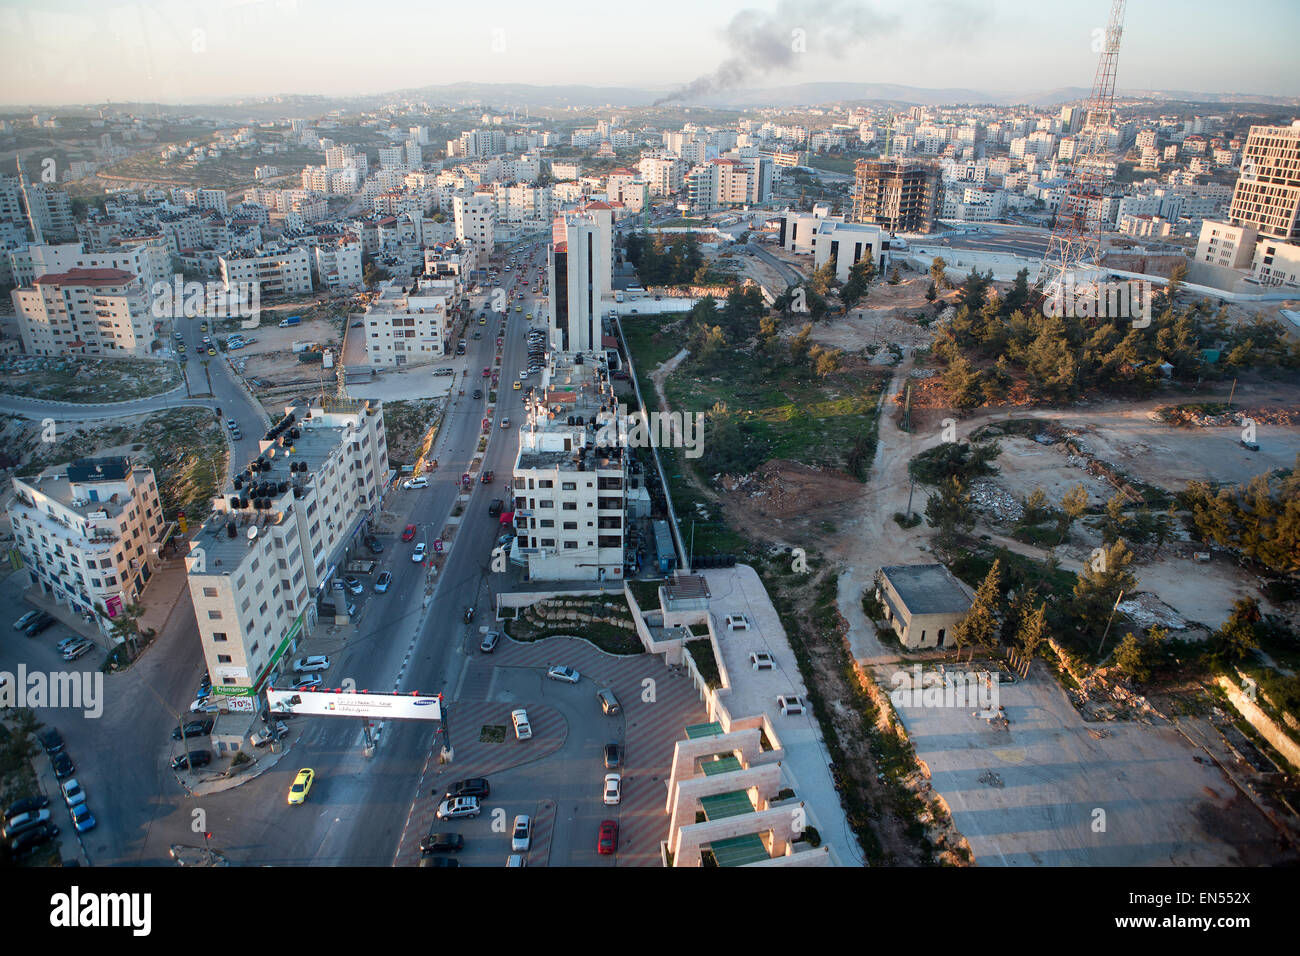 Ramallah city, west bank, Palestine Stock Photo - Alamy